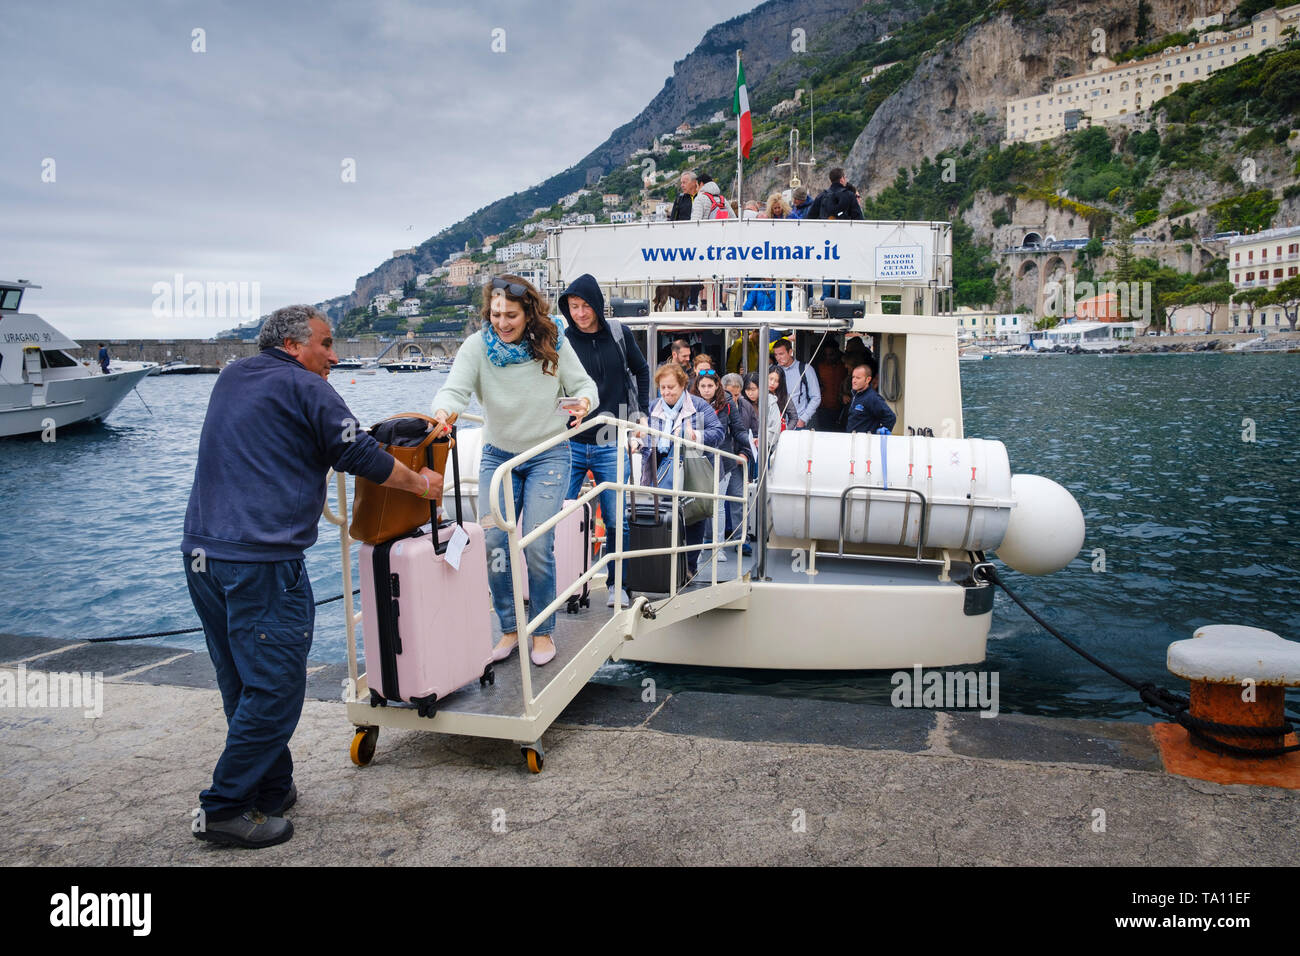 Trasporto in barca. Turista con i bagagli e gli altri passeggeri lo sbarco da un traghetto Travelmar presso il porto di Amalfi sulla Costiera Amalfitana. Foto Stock